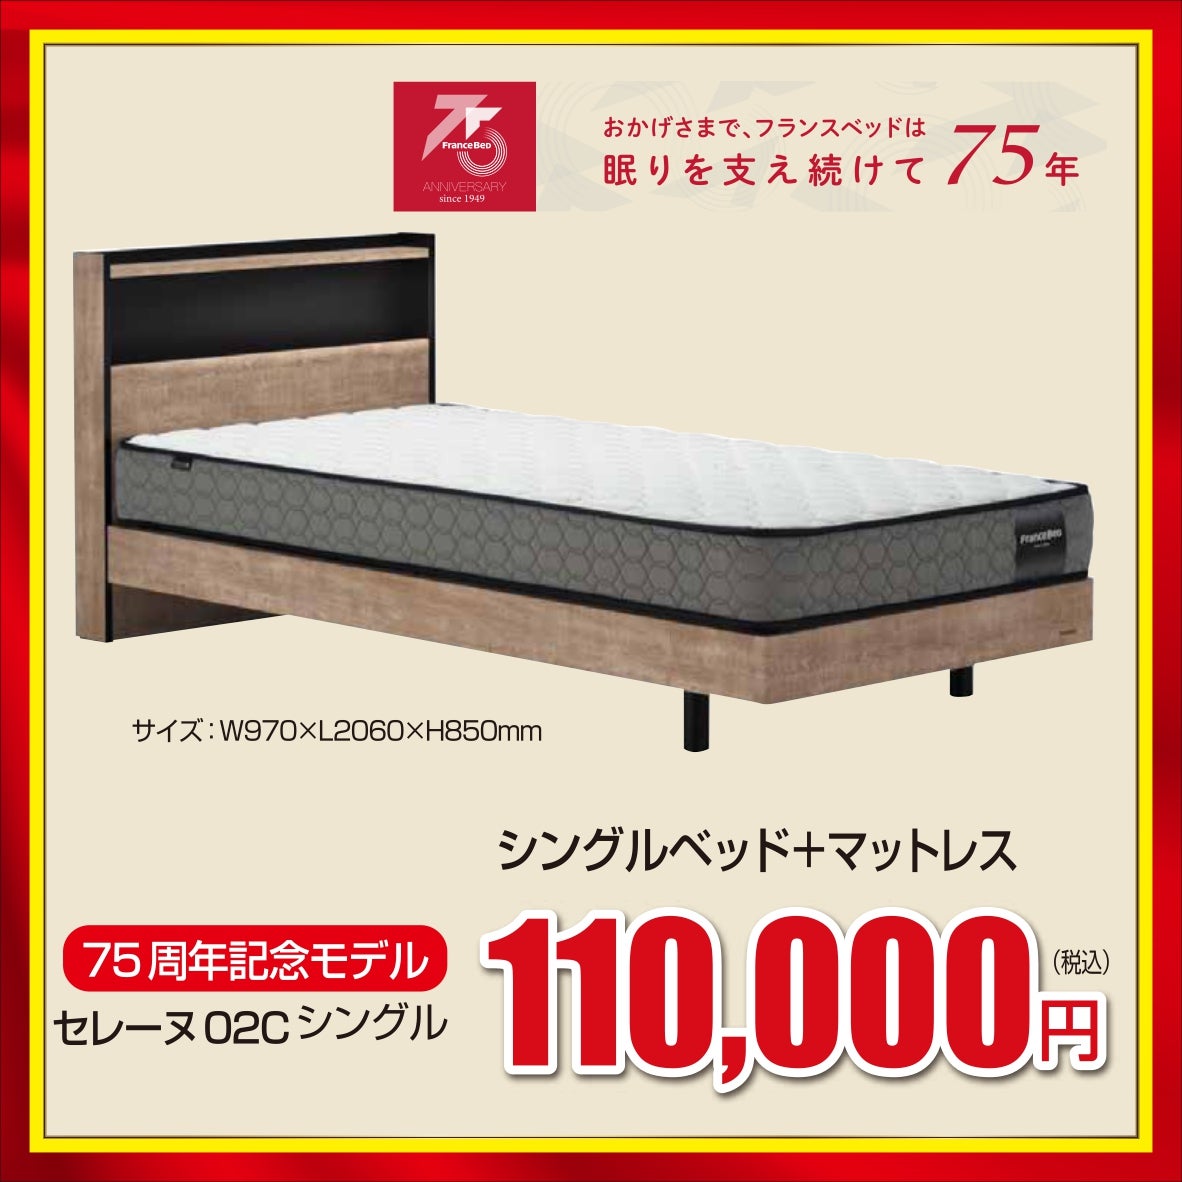 国内ベッドメーカーNo.1のフランスベッドの高品質商品が盛りだくさん！！